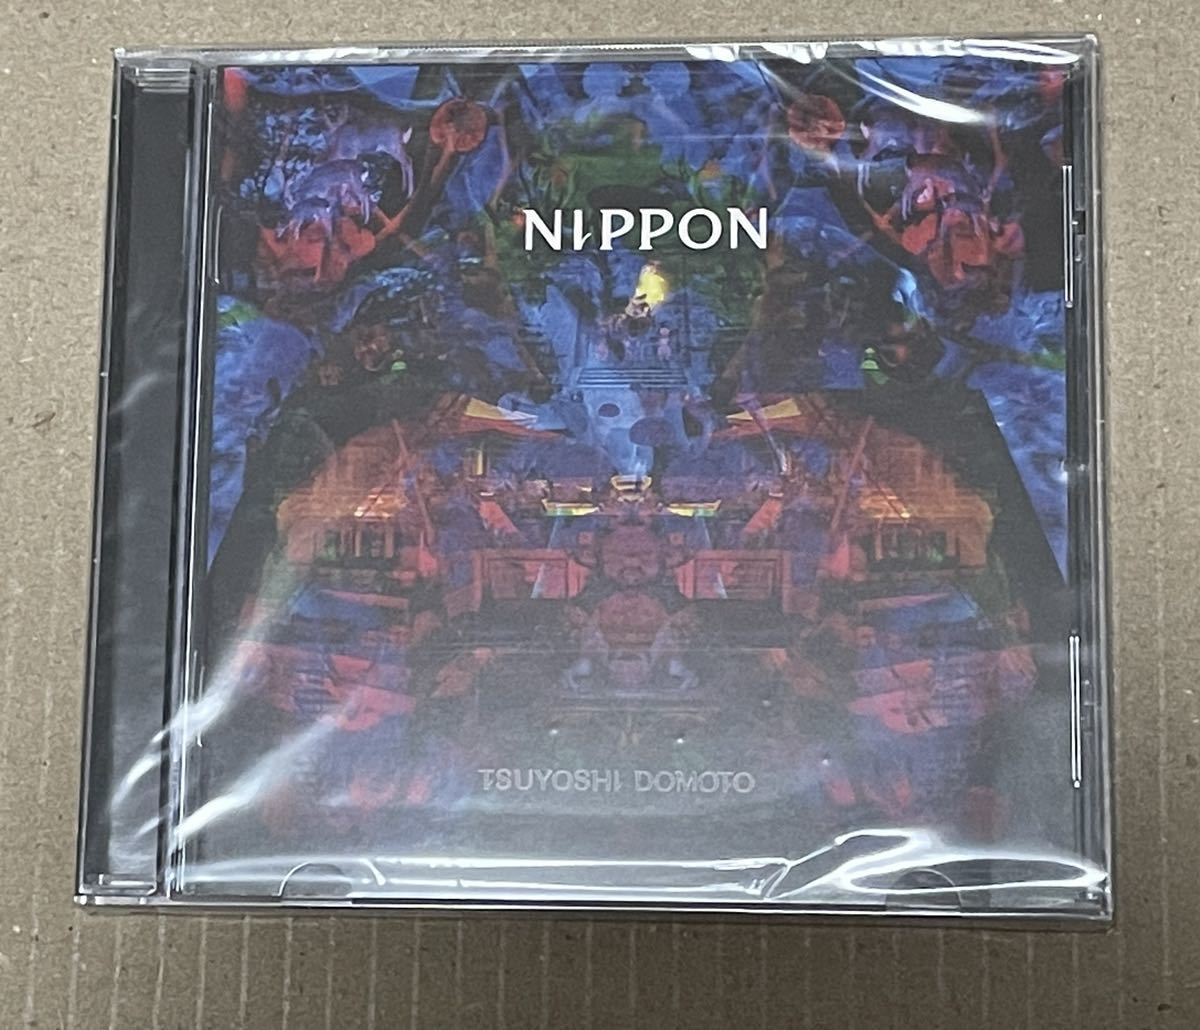  нераспечатанный включая доставку Doumoto Tsuyoshi - Nippon зарубежная запись CD / GSCD083